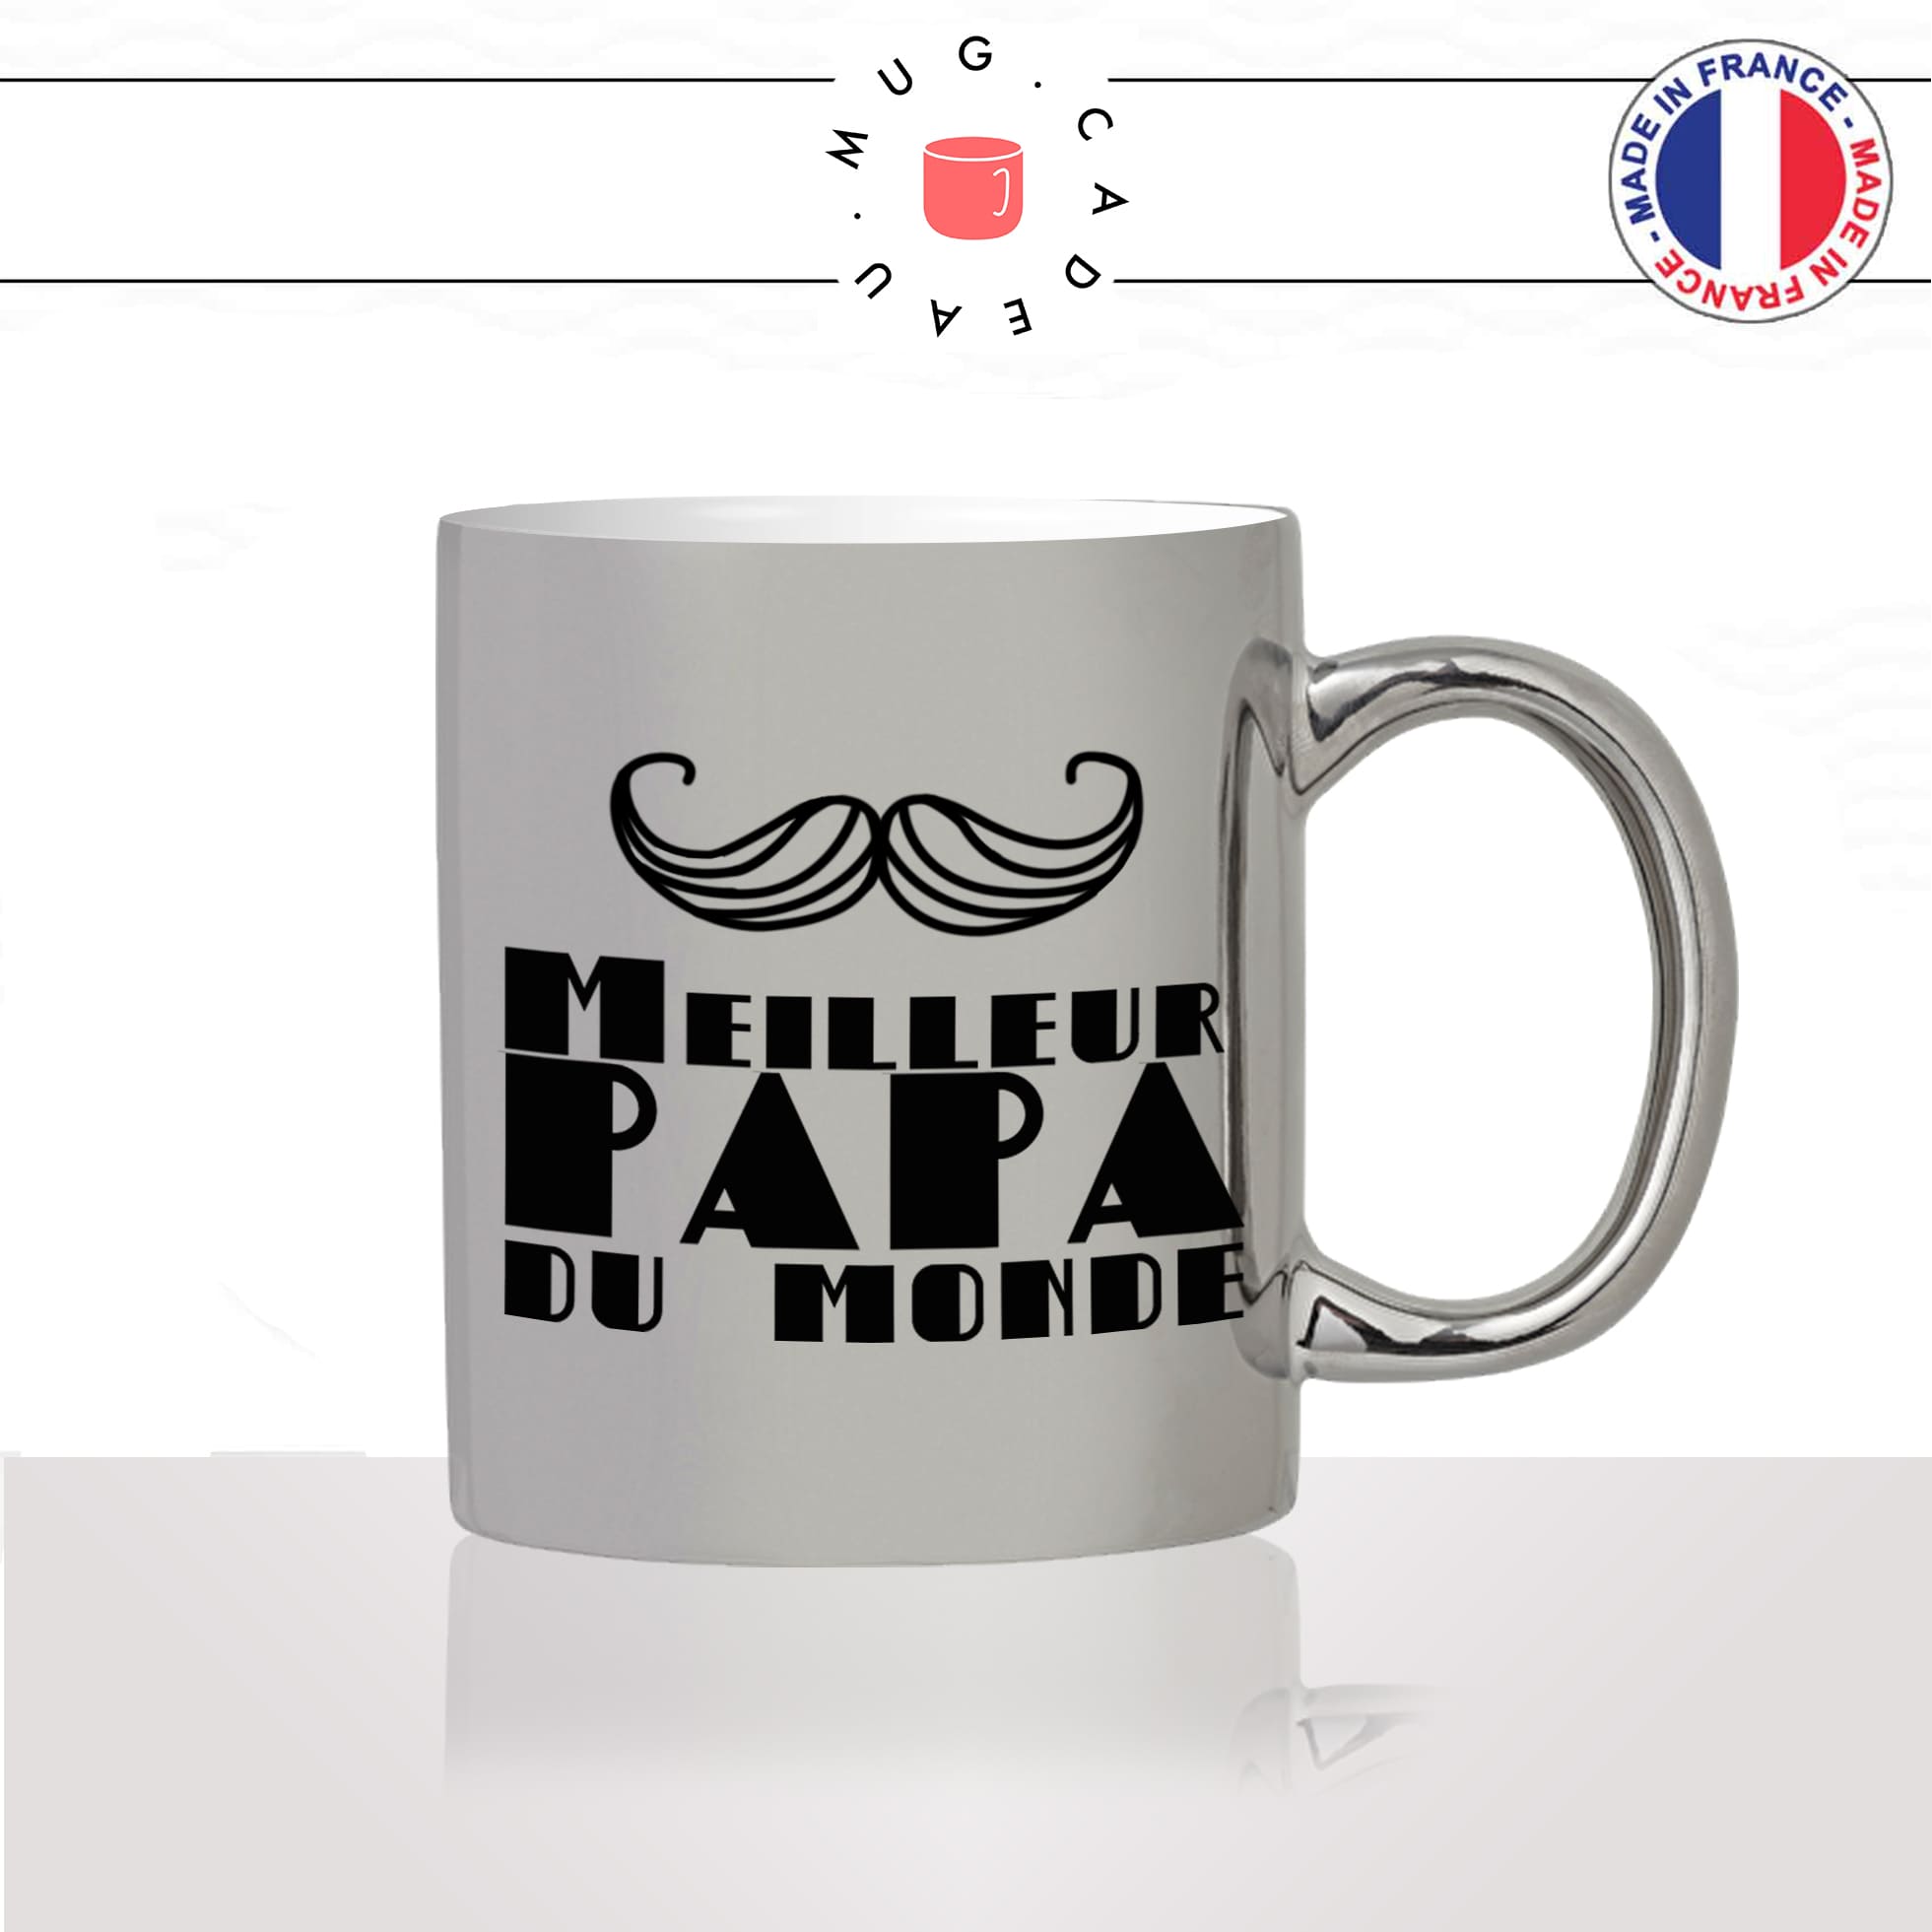 mug-tasse-argent-argenté-silver-fete-des-pères-meilleur-papa-du-monde-moustache-homme-mignon-idée-cadeau-fun-cool-café-thé2